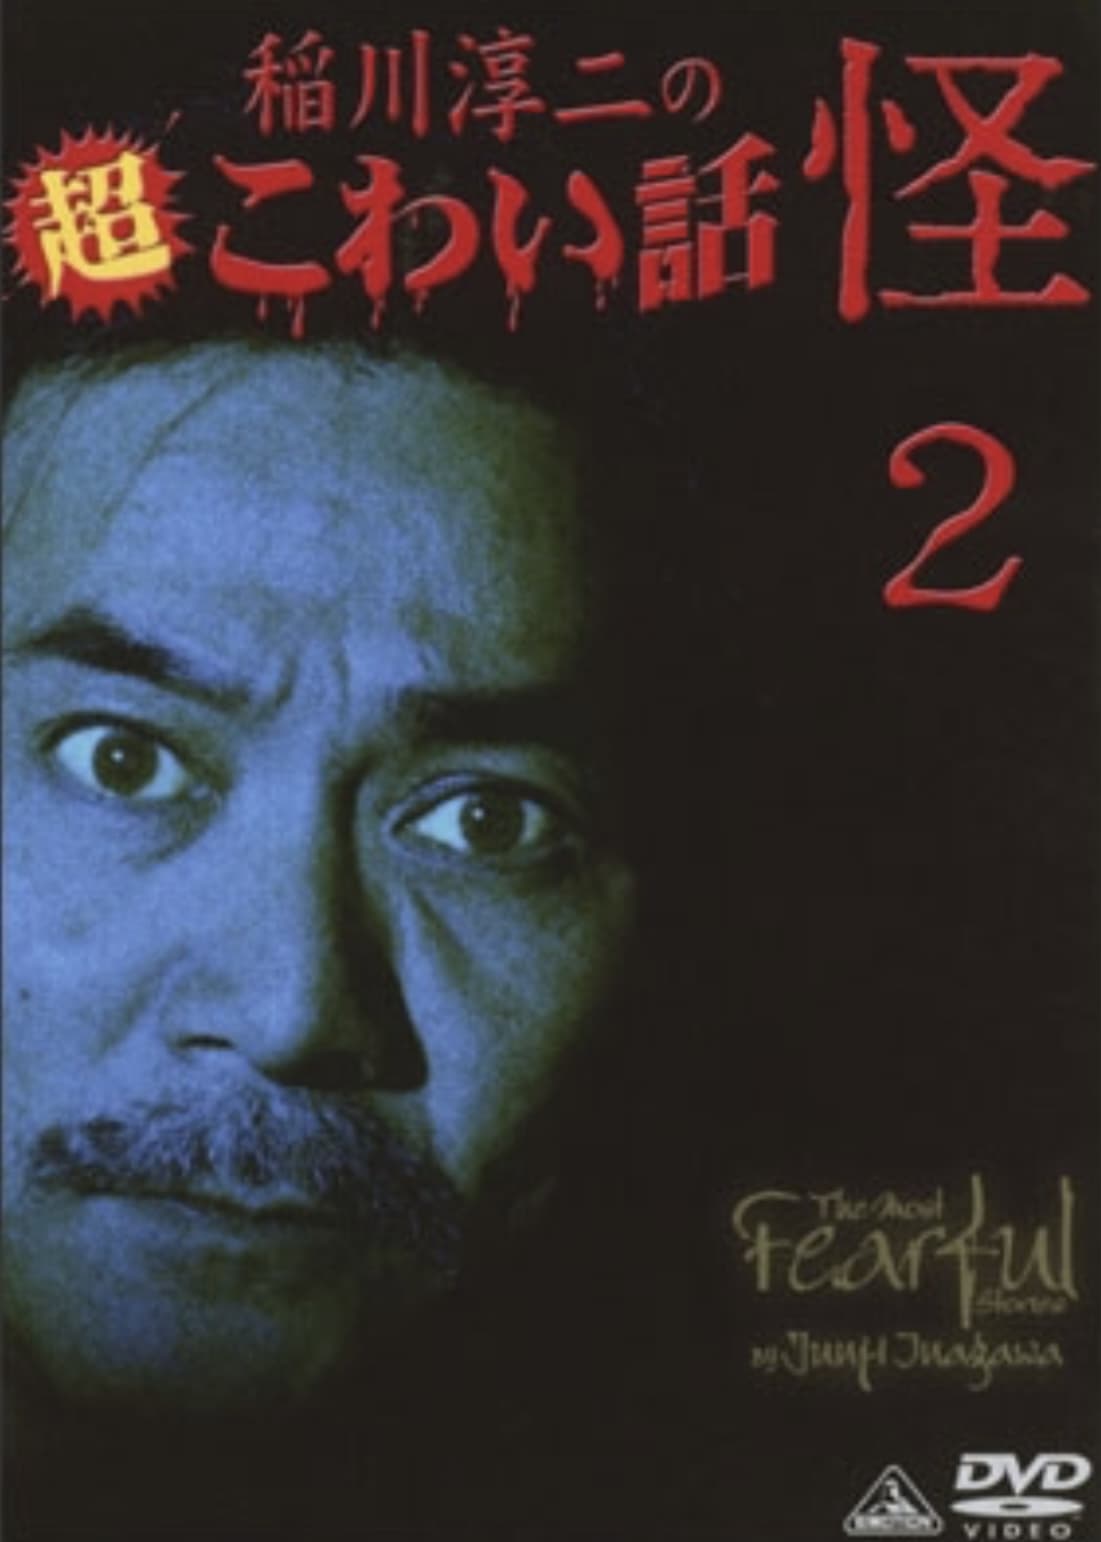 The Most Fearful Stories by Junji Inagawa: Kai 2